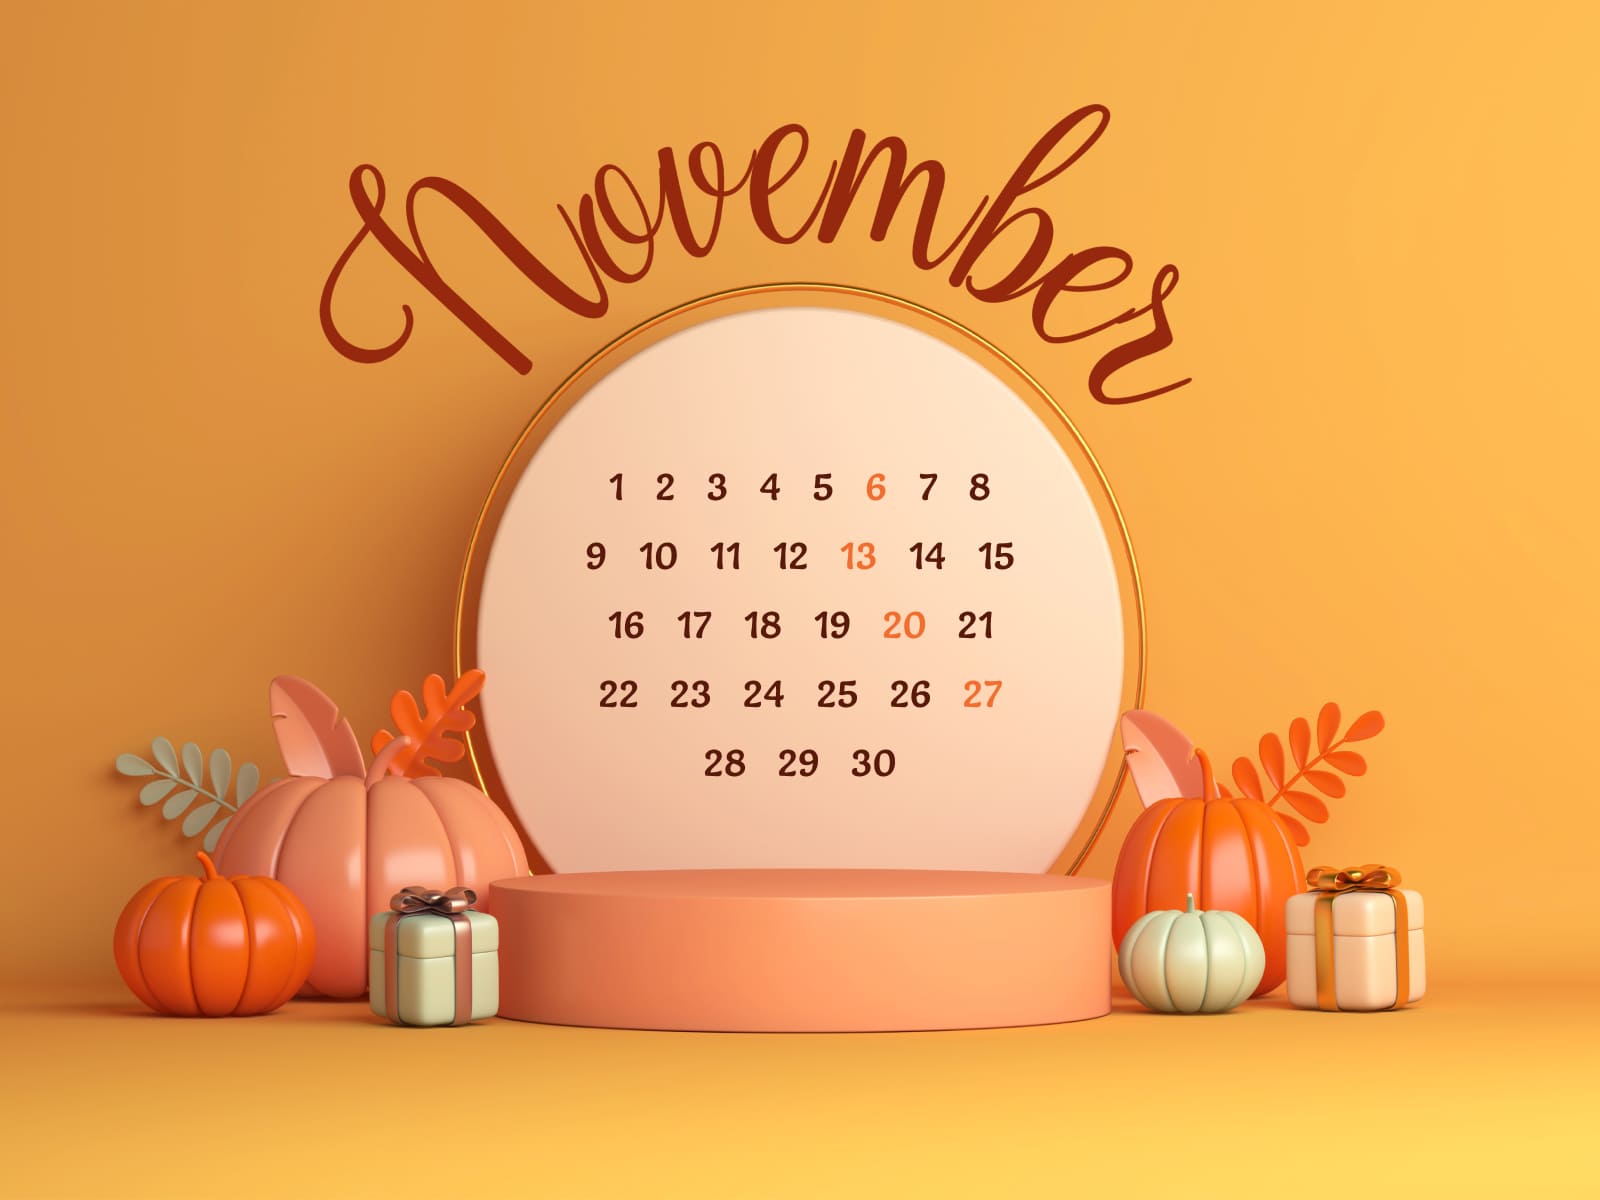 Free November calendar extension 1600х1200.